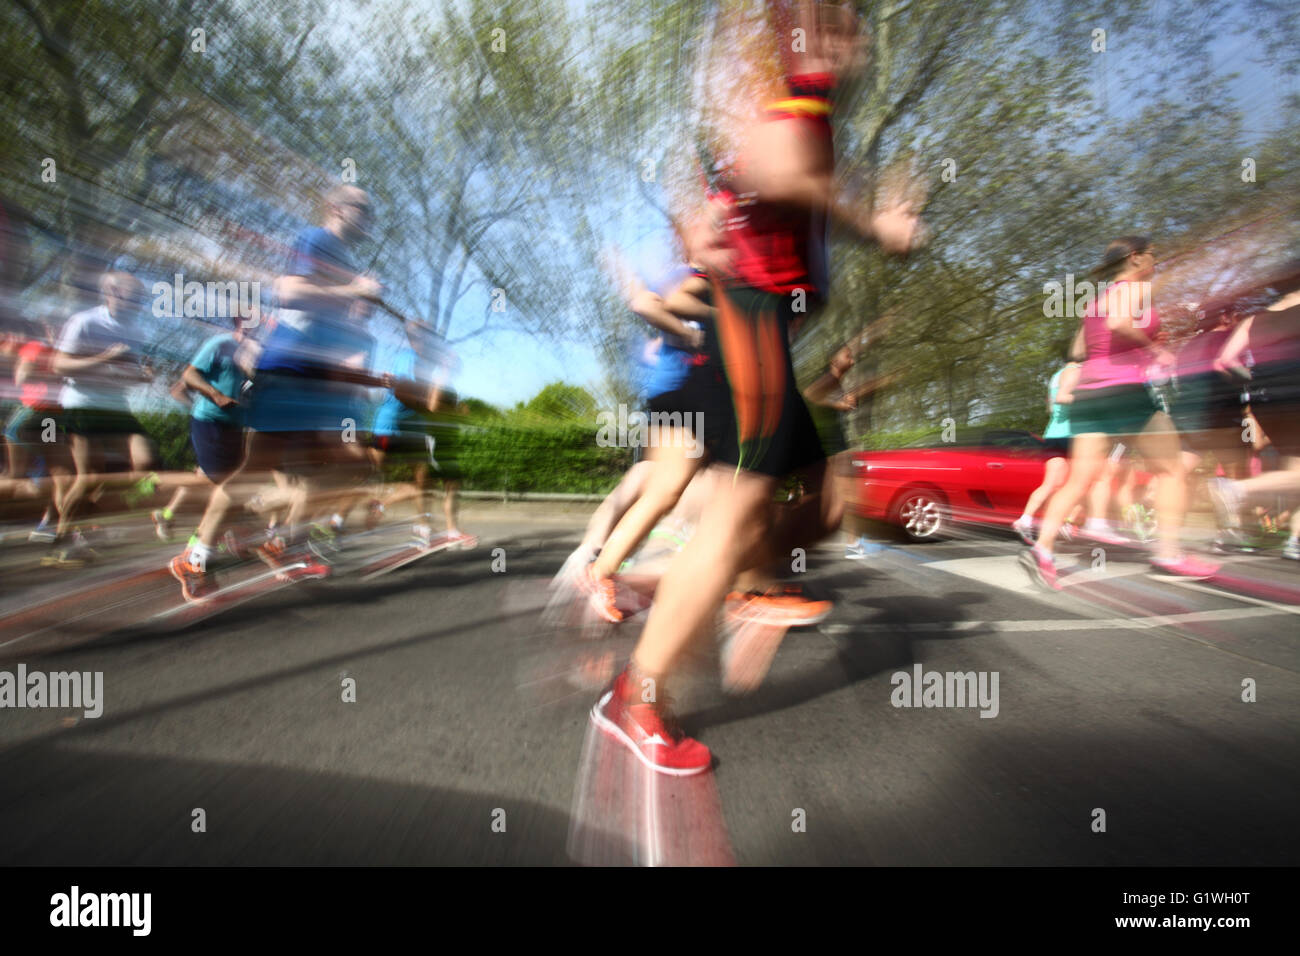 2016 London Uk Menschen in Hackney laufen Halbmarathon laufen kann Stockfoto